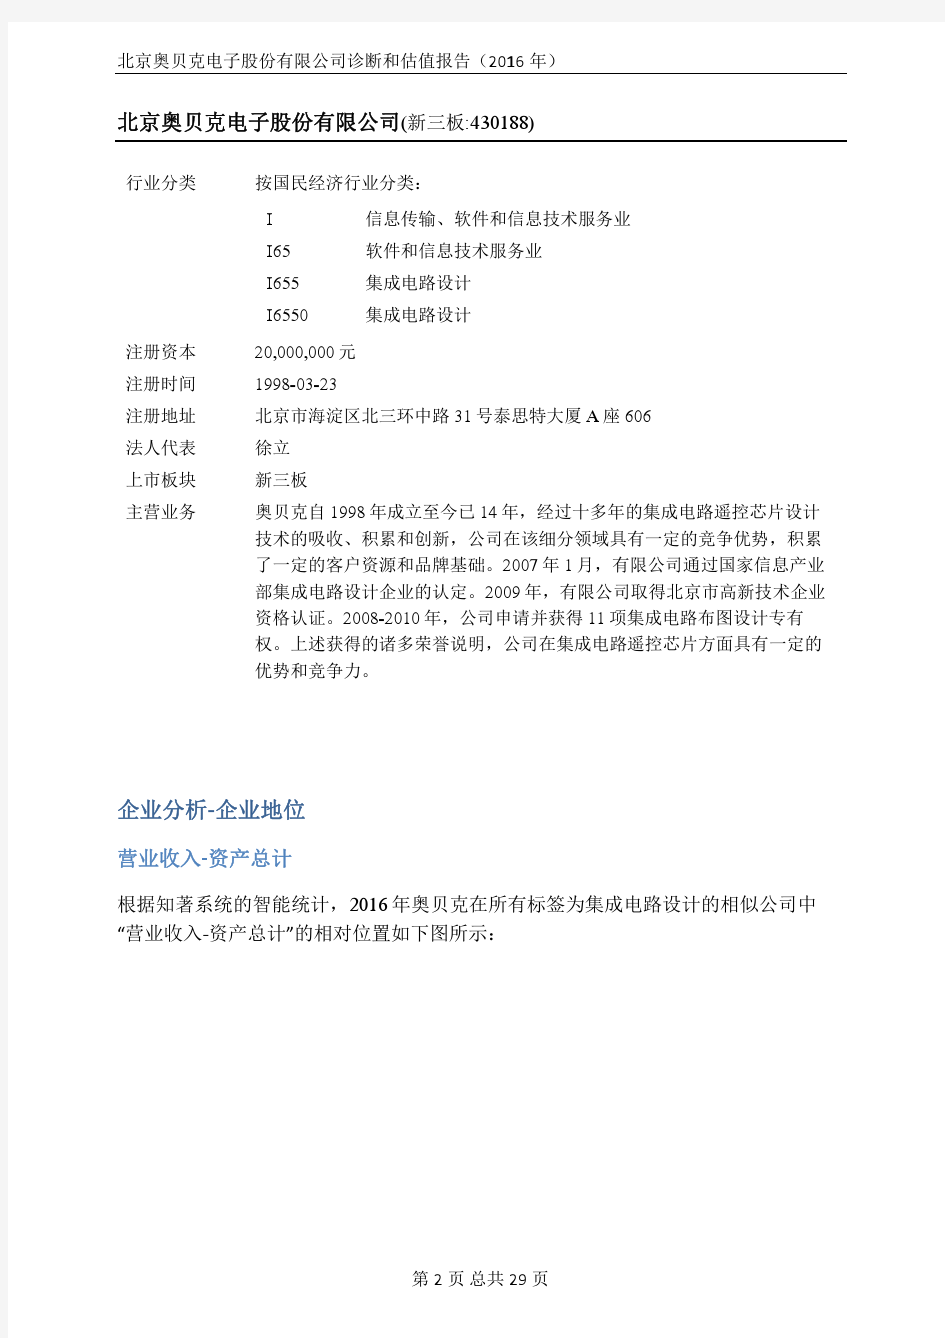 北京奥贝克电子股份有限公司企业诊断与估值报告(2016年)